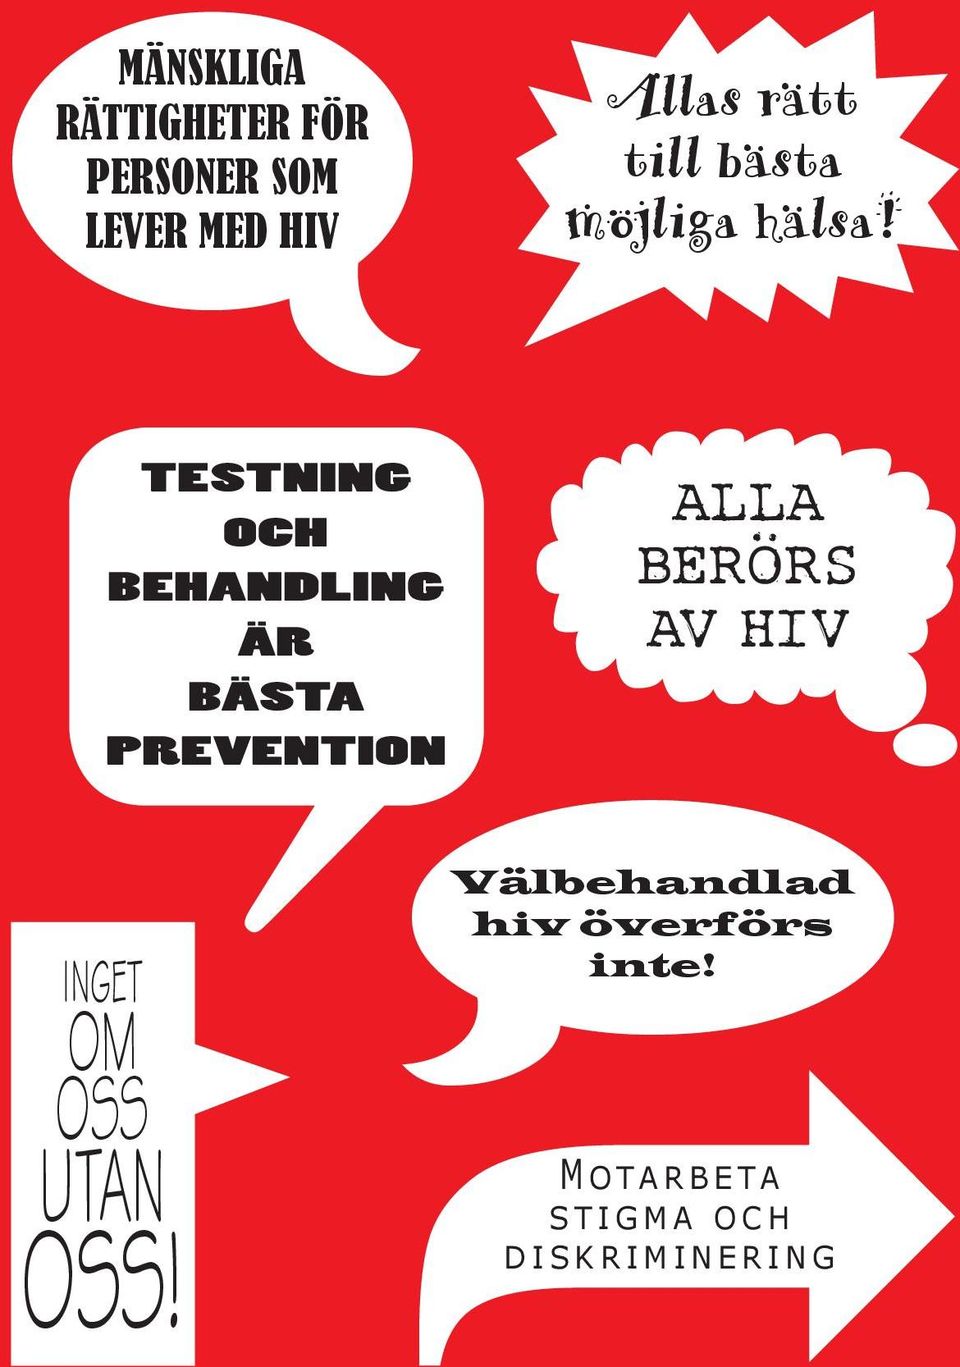 TESTNING OCH BEHANDLING ÄR BÄSTA PREVENTION [ALLA BERÖRS AV HIV!